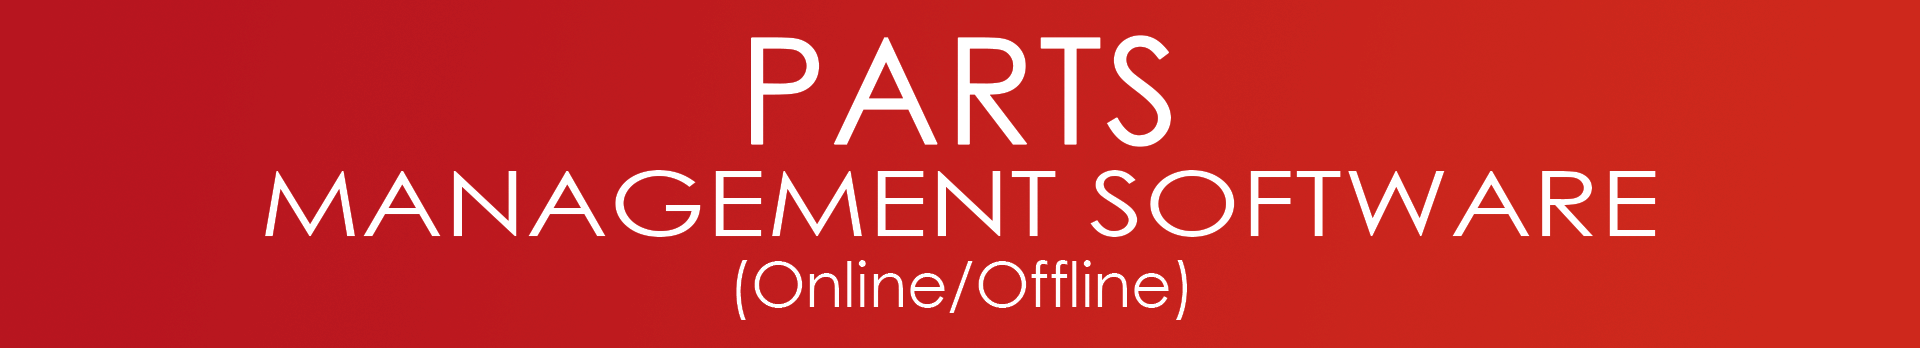 Parts Management Software